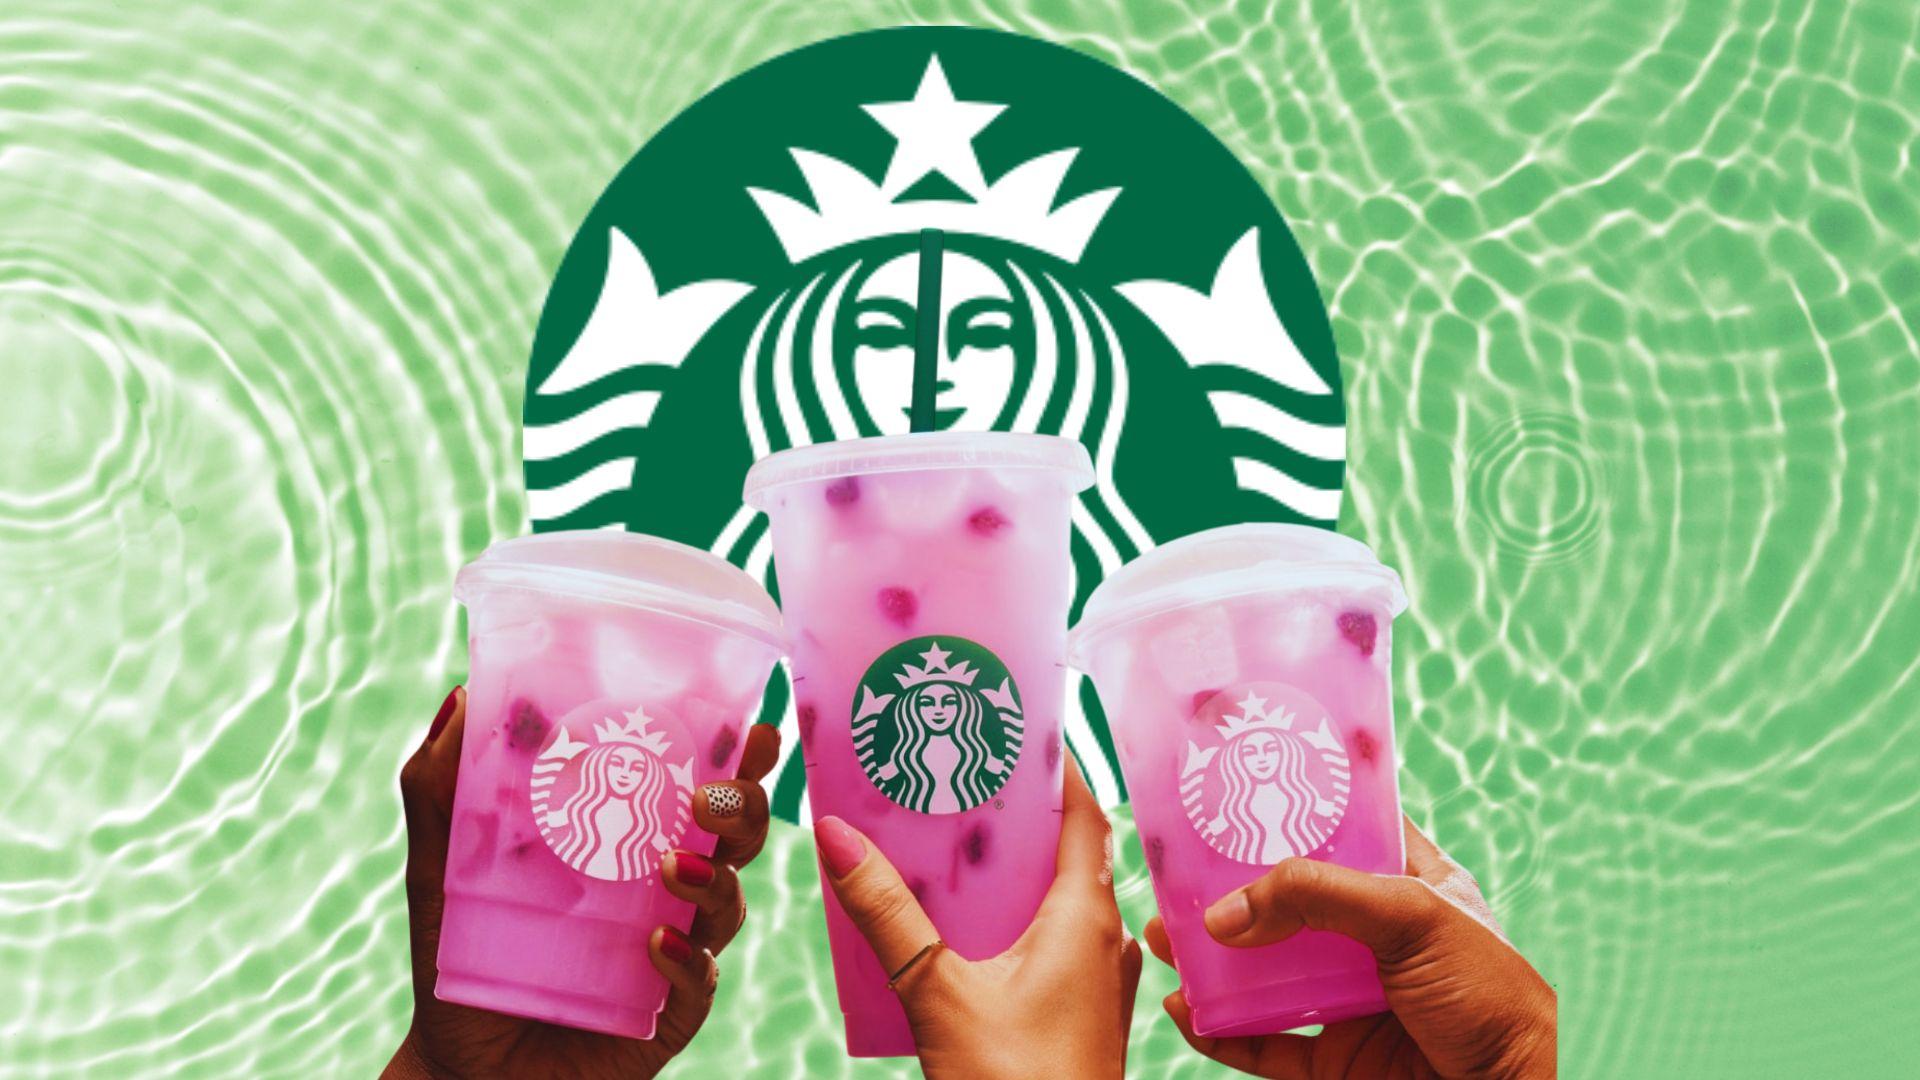 Starbucks refresher drinks